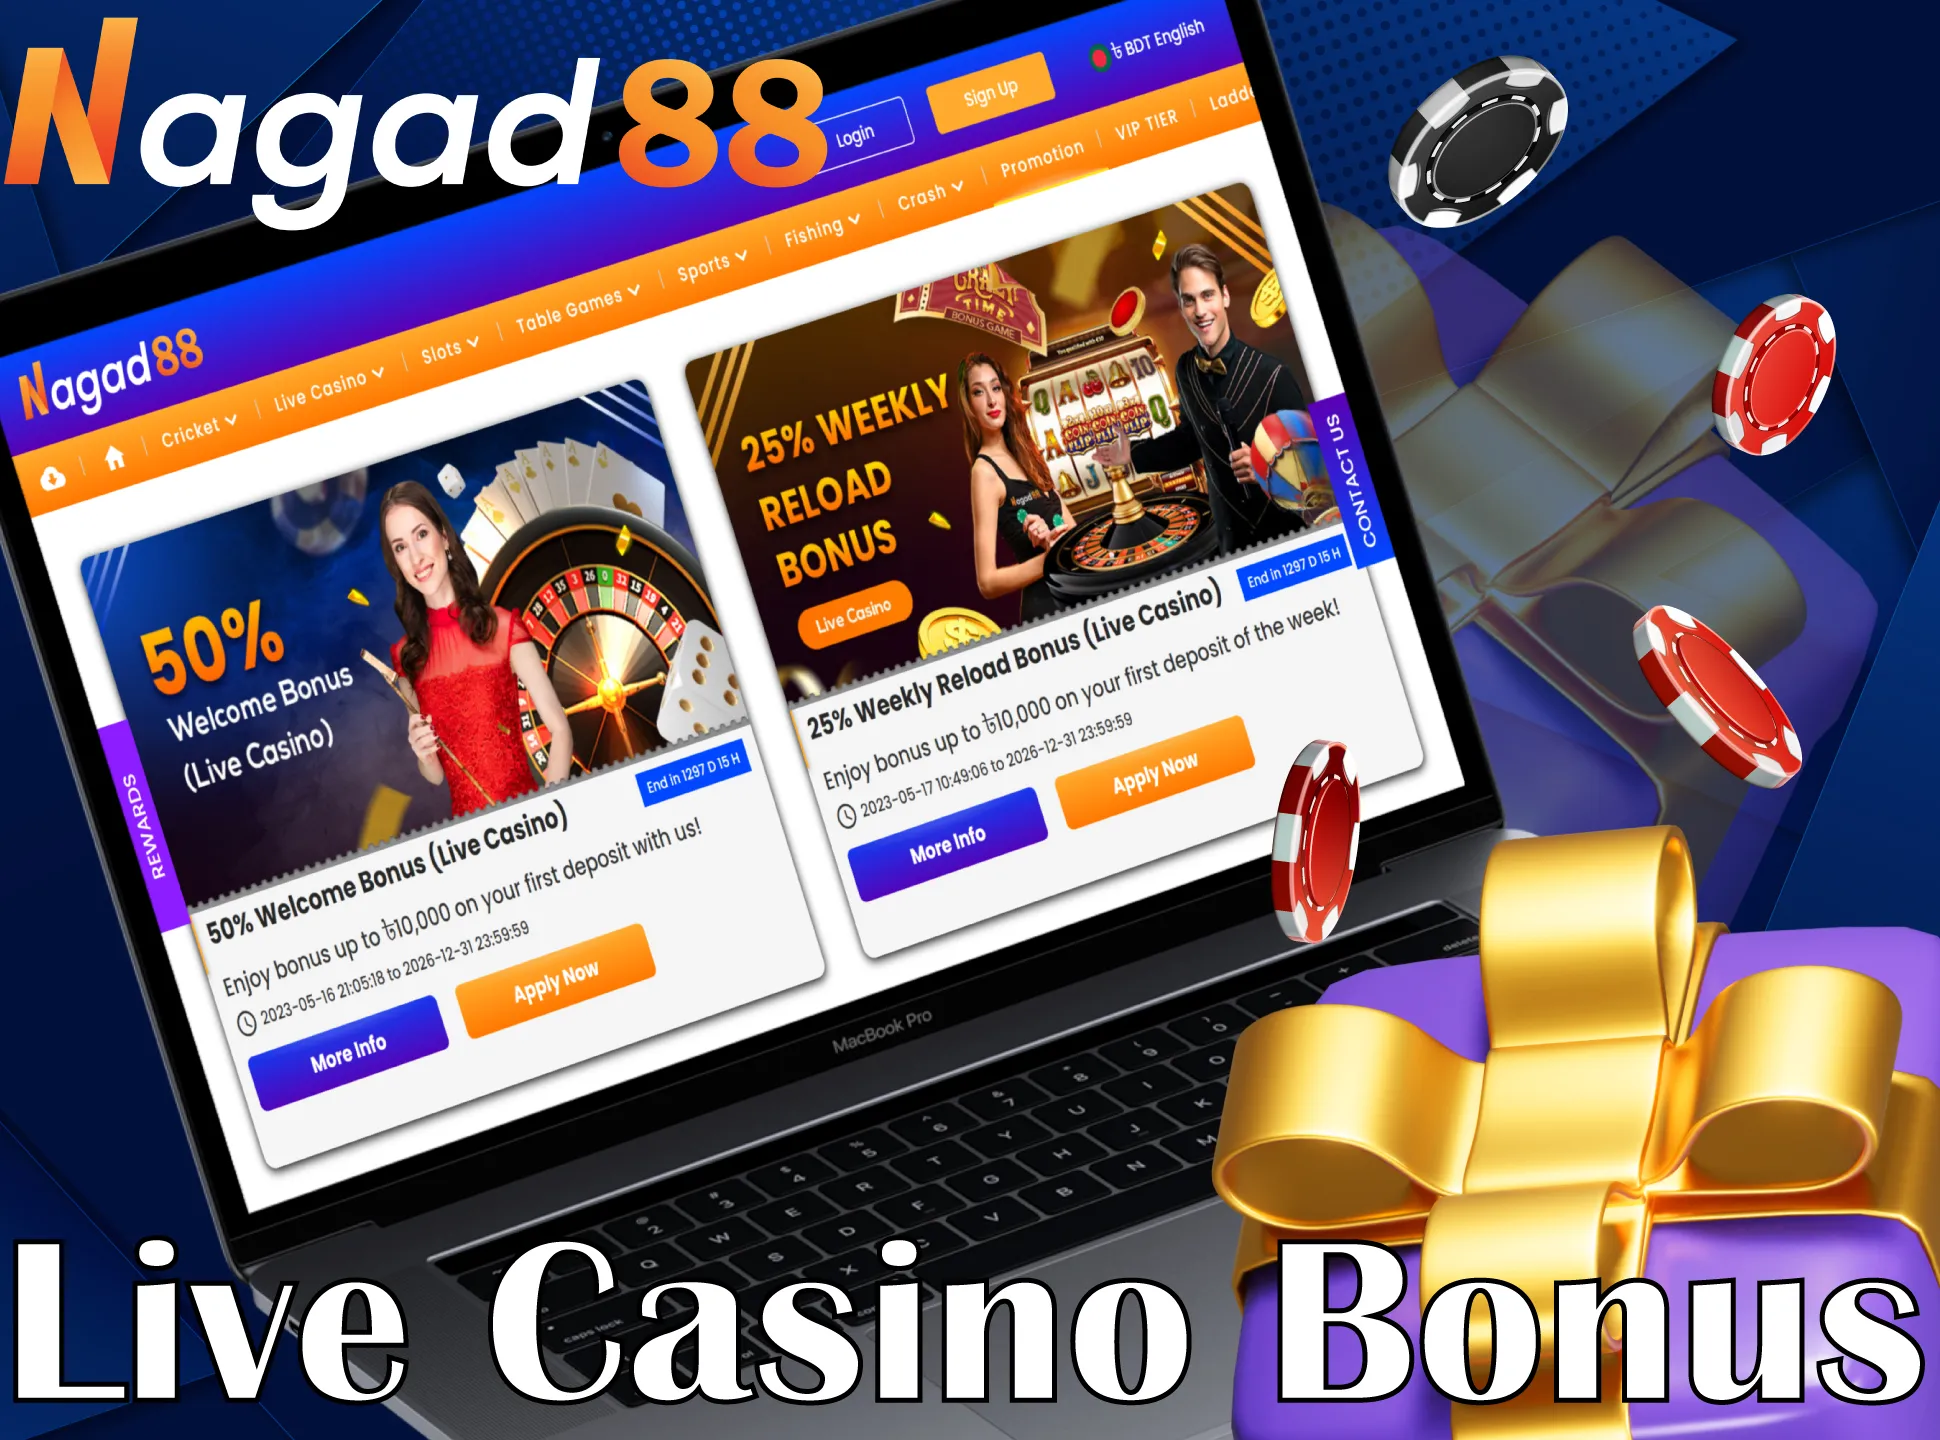 Get a special bonus for Live Casino games from Nagad88.